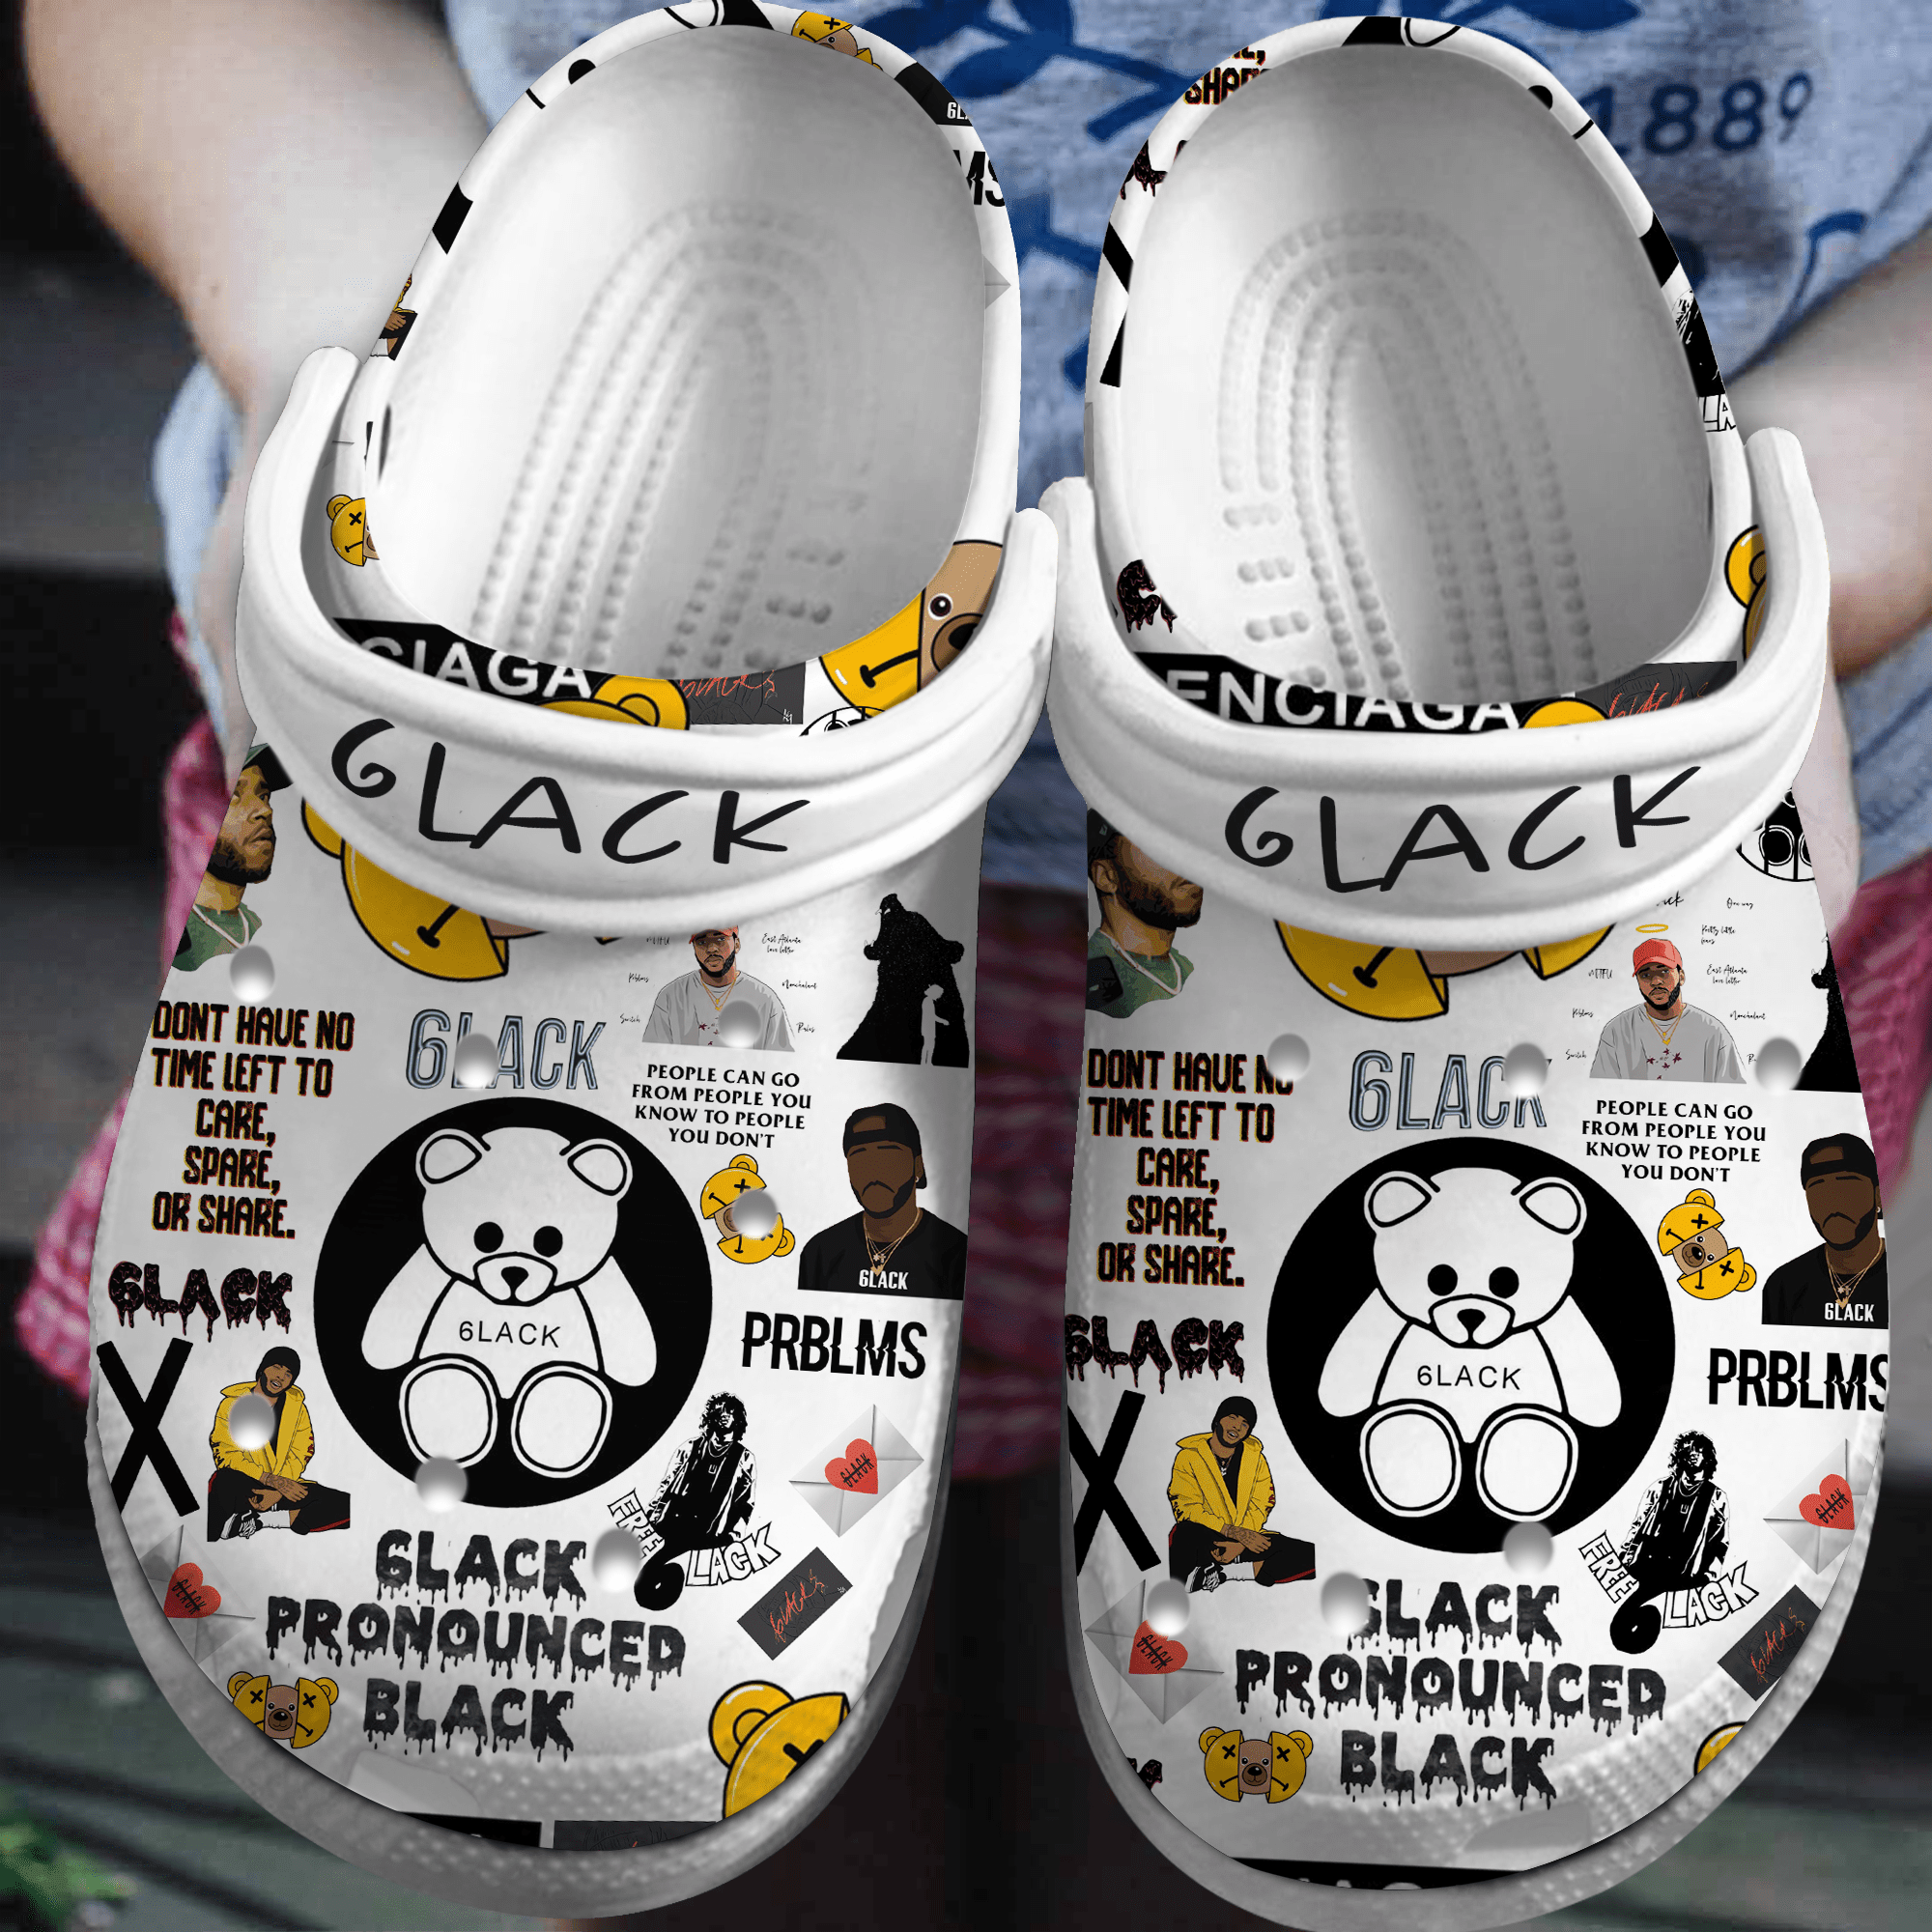 6lack Pronounced Black Music Crocs Crocband Clogs Shoes Comfortable For Men Women and Kids 2